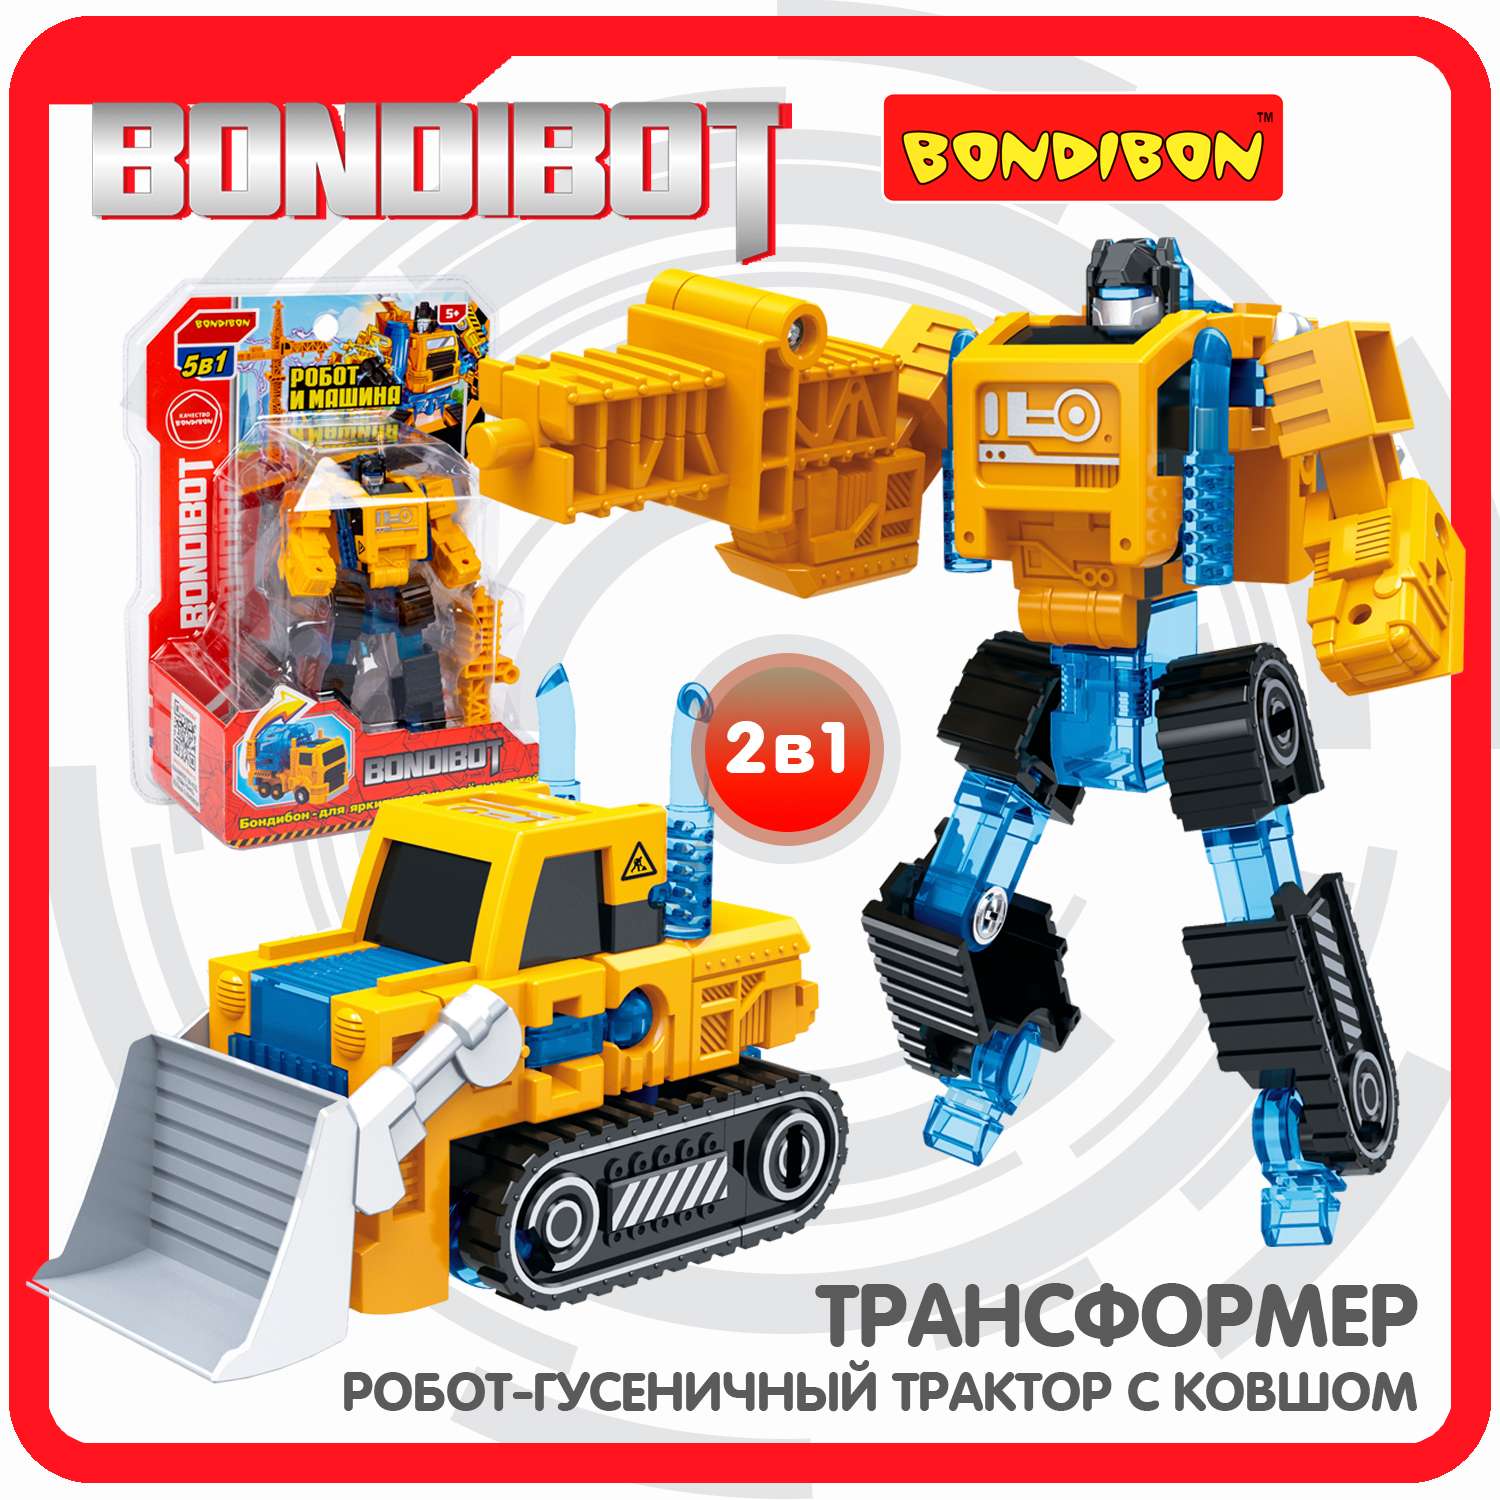 Трансформер BONDIBON BONDIBOT 2в1 робот- гусеничный трактор с ковшом жёлтого цвета - фото 1